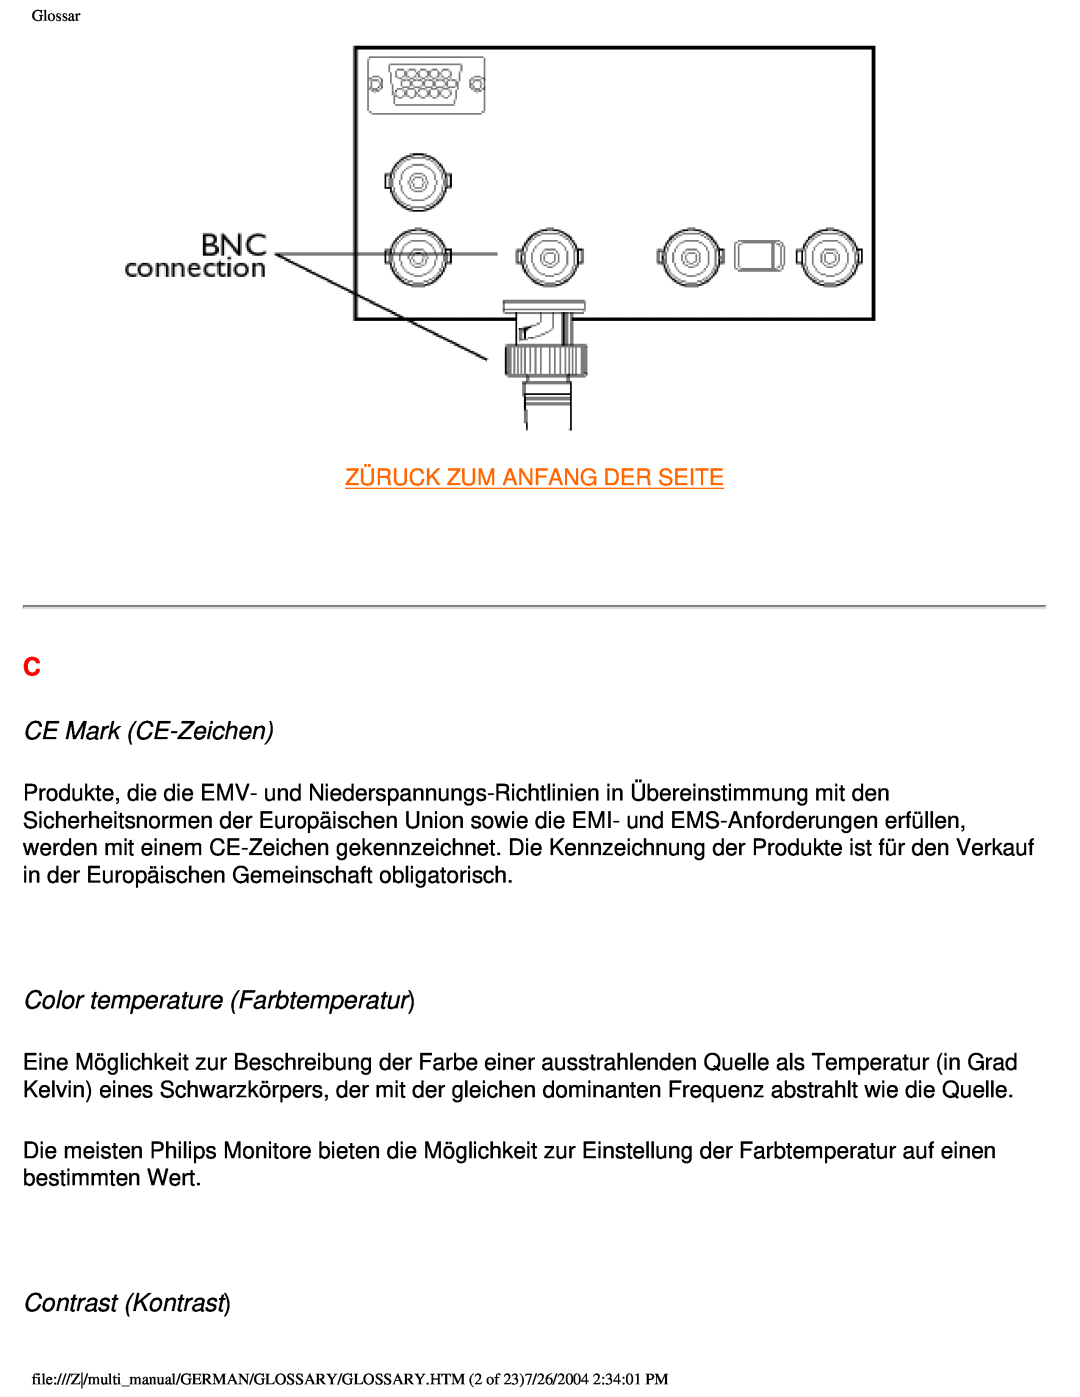 Philips 107X2 CE Mark CE-Zeichen, Color temperature Farbtemperatur, Contrast Kontrast, Züruck Zum Anfang Der Seite 